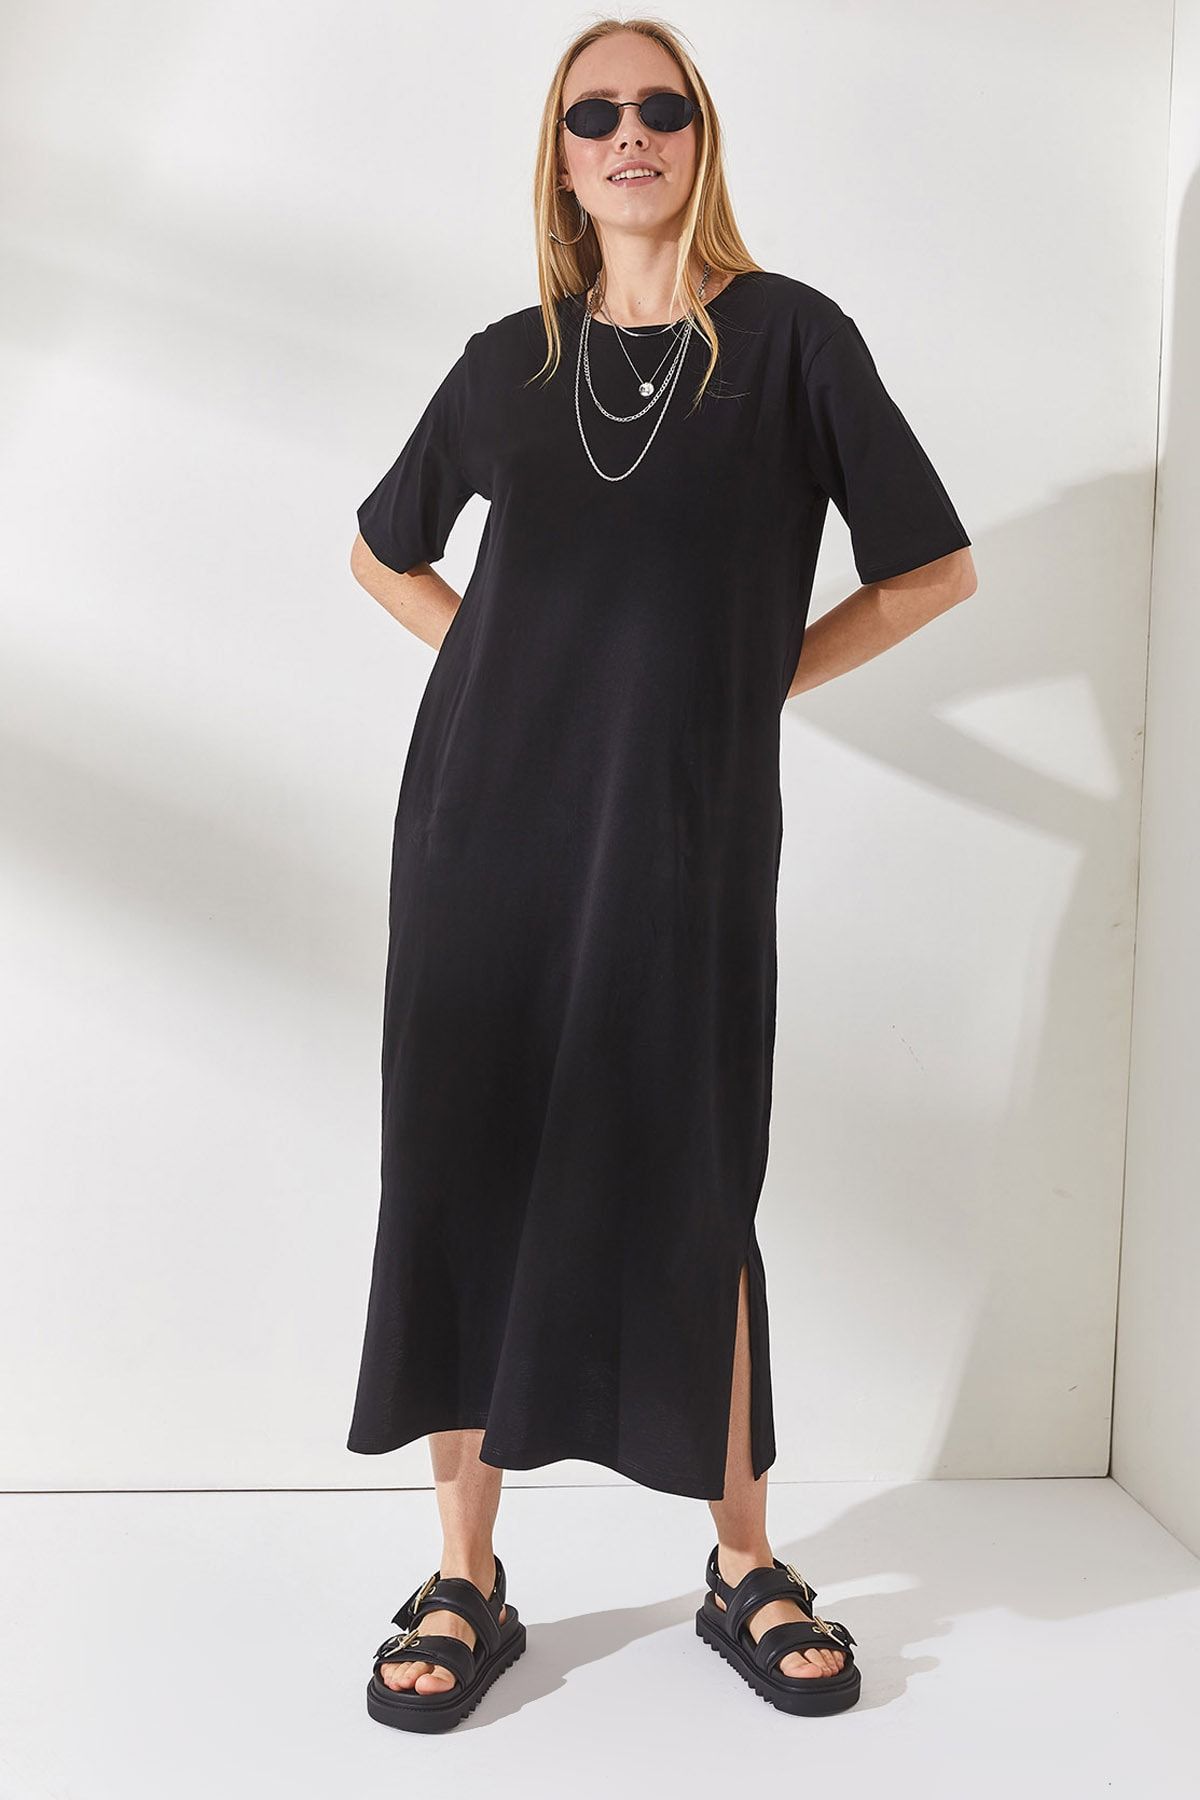 Olalook Kadın Siyah Yanı Yırtmaçlı Oversize Pamuk Elbise  ELB-19001880